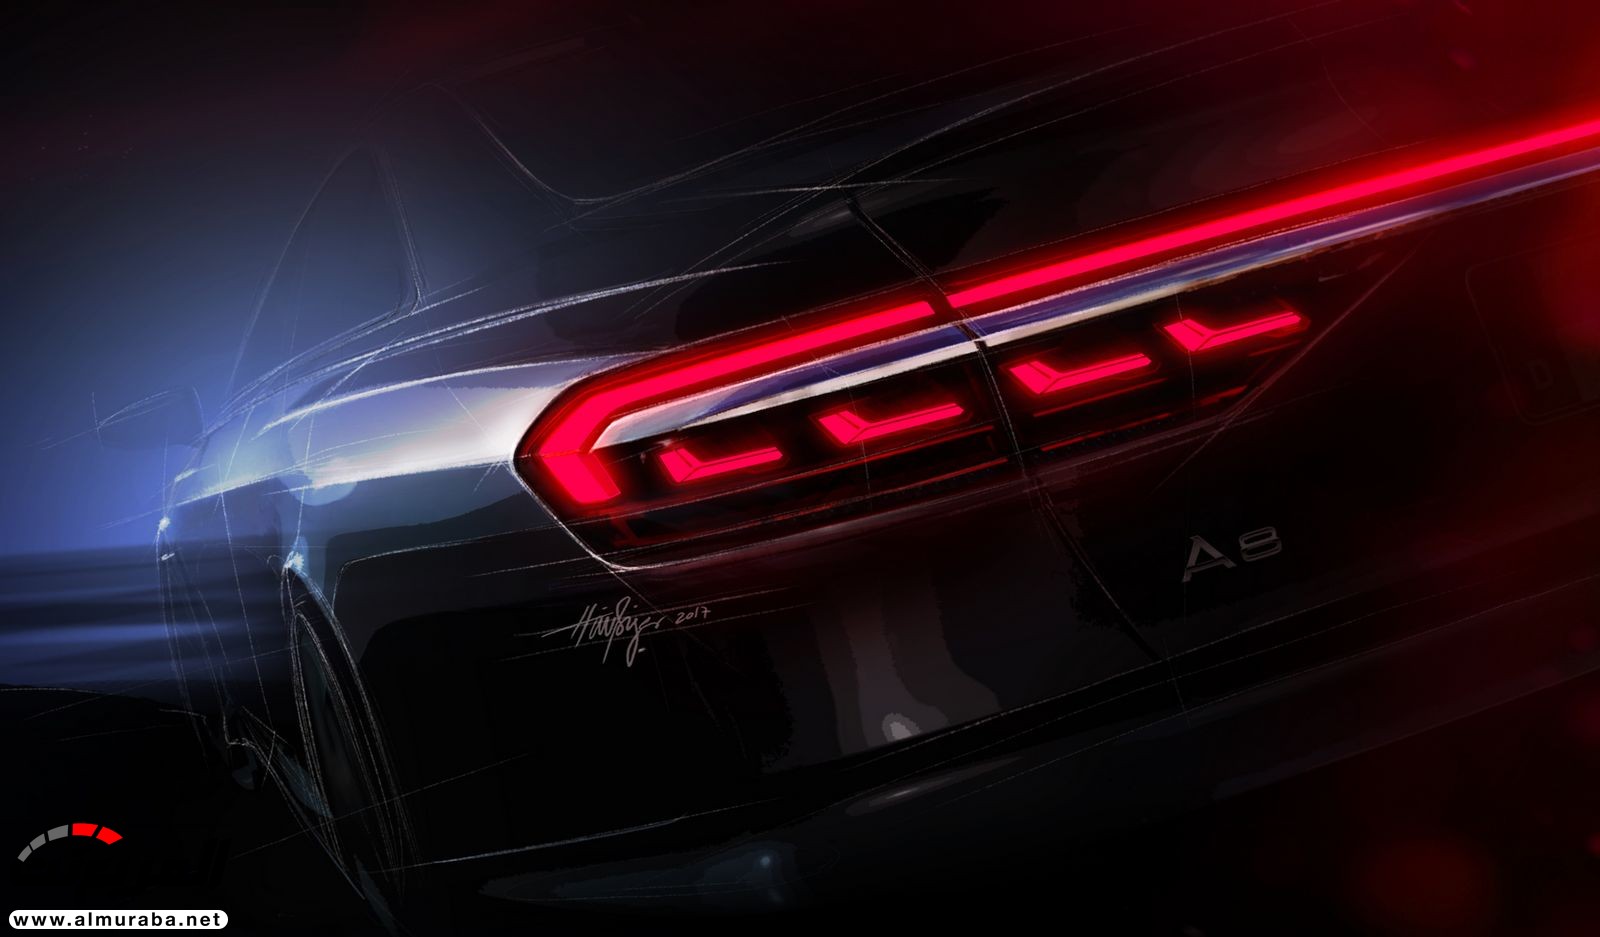 أودي A8 2018 الجديدة كلياً تكشف نفسها بتصميم وتقنيات متطورة "معلومات + 100 صورة" Audi A8 11